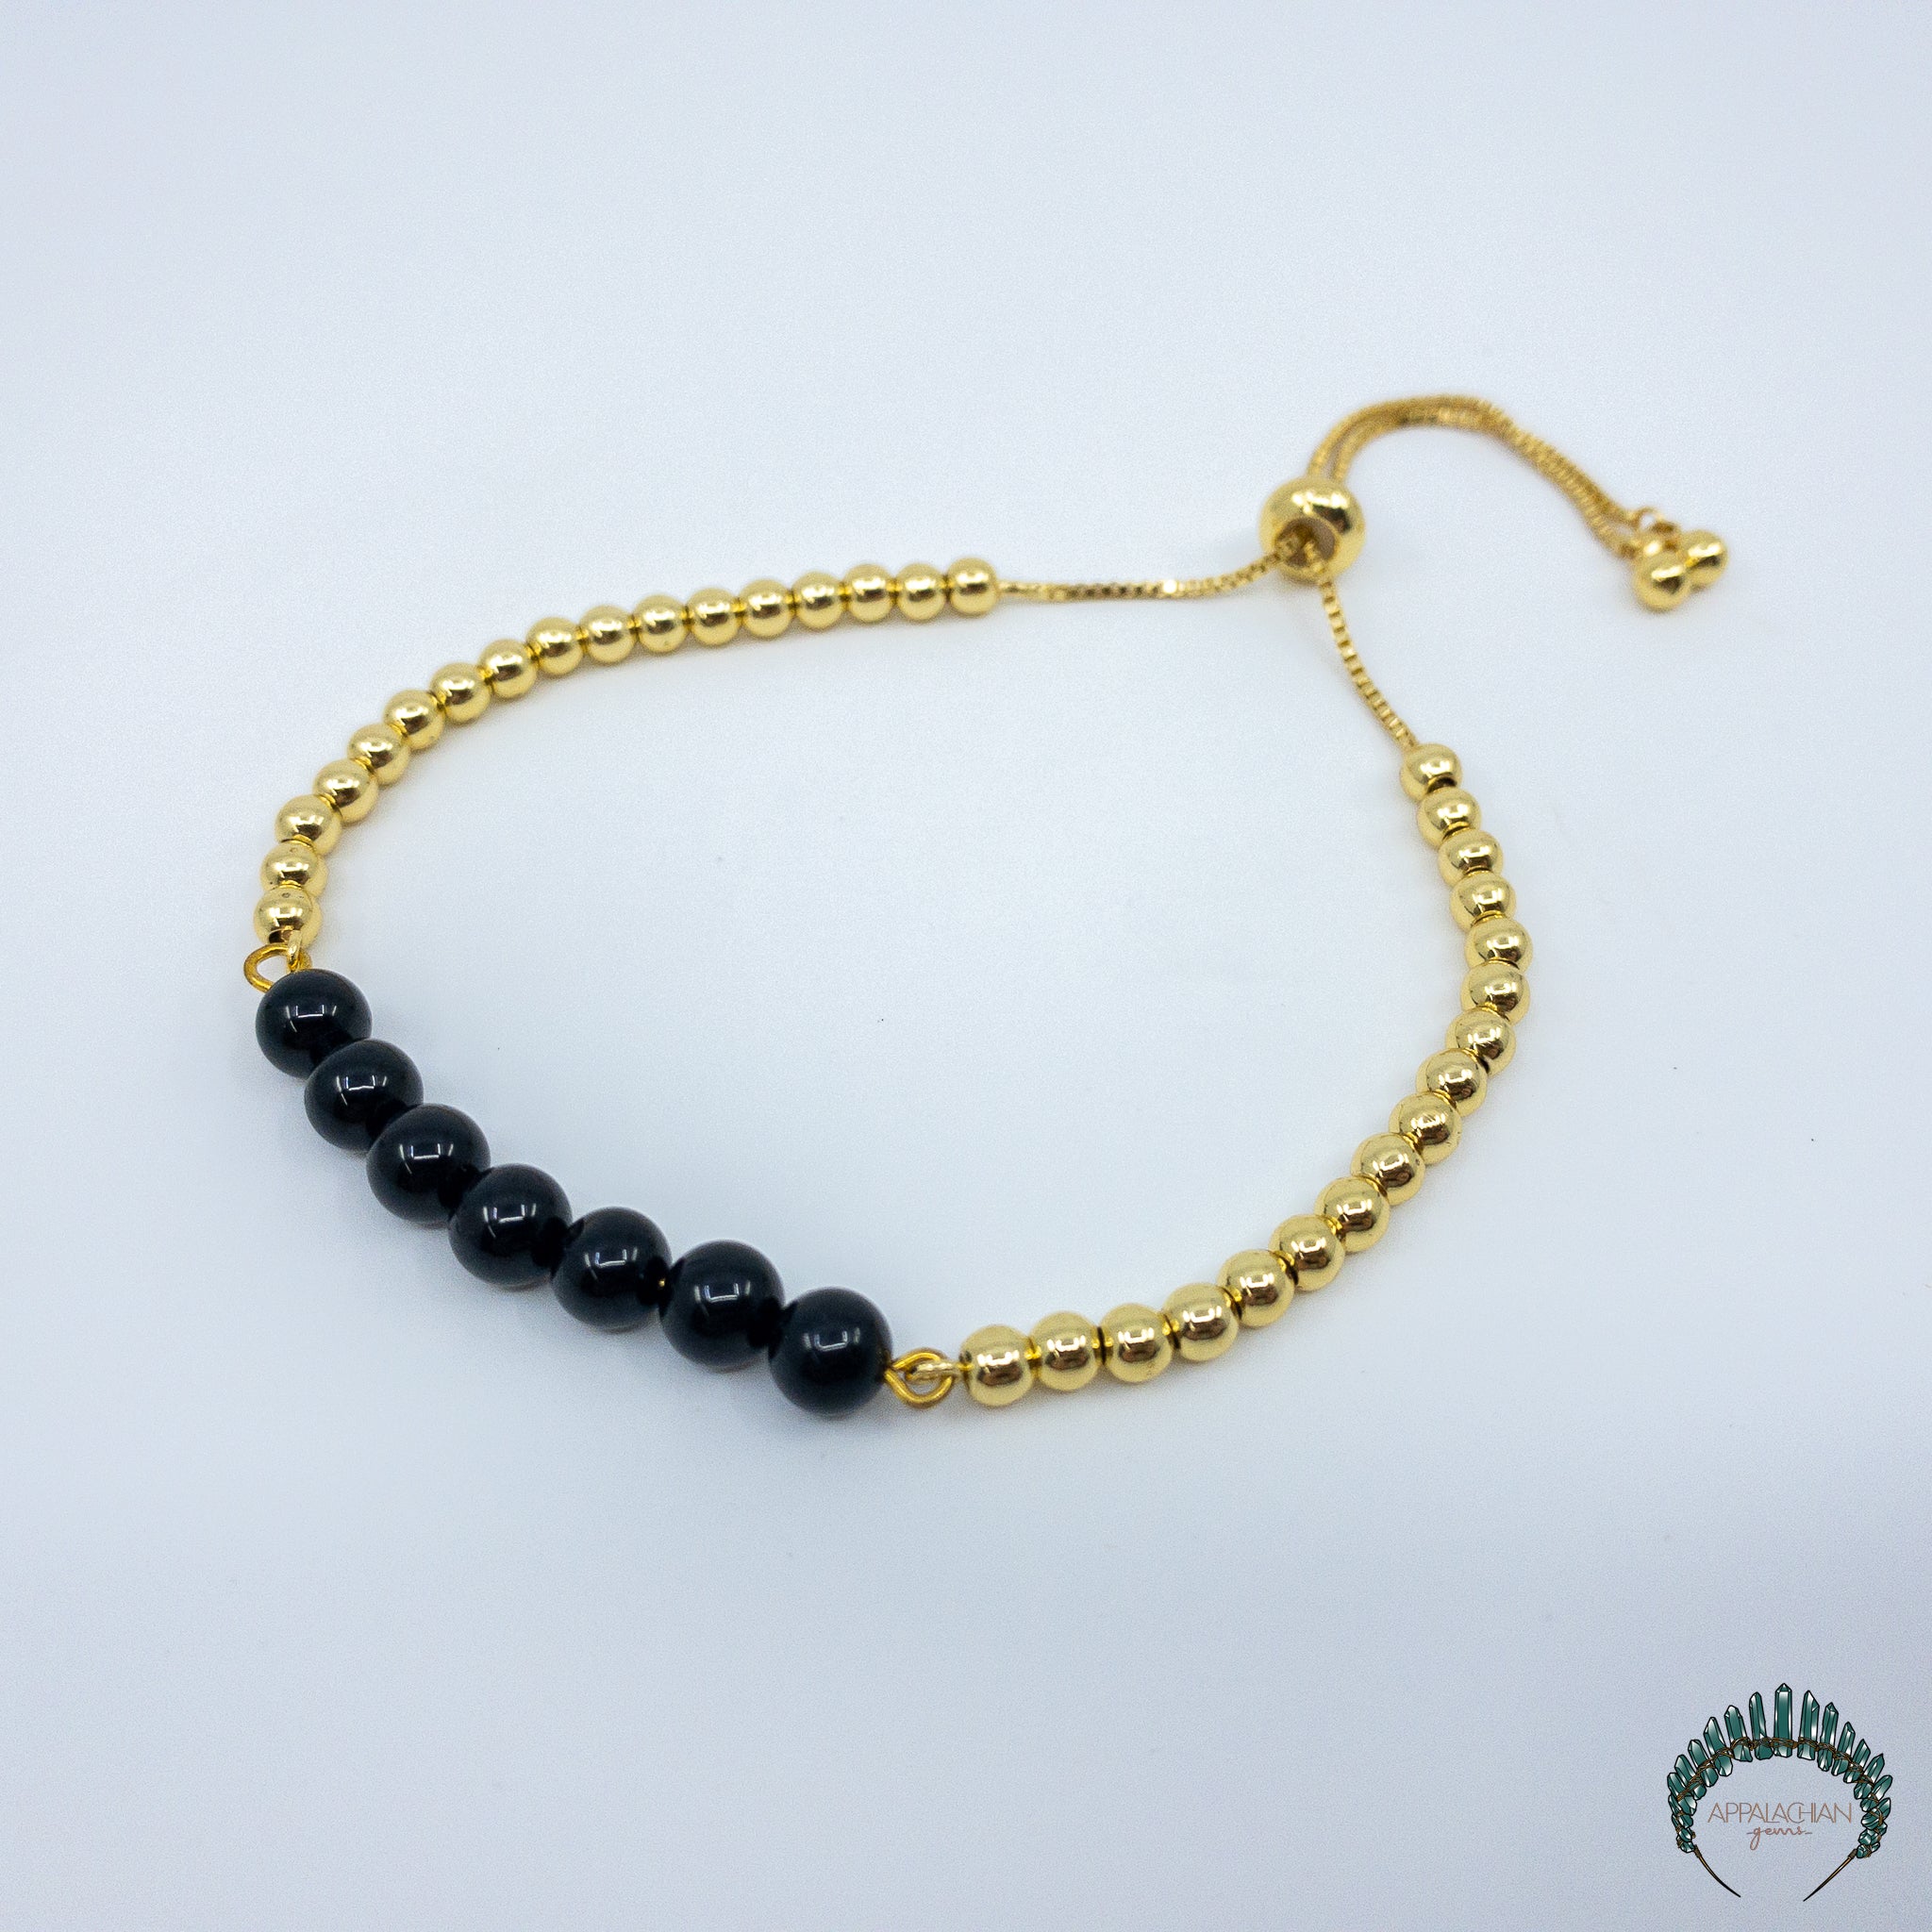 Black Tourmaline Bracelet - Appalachian Gems